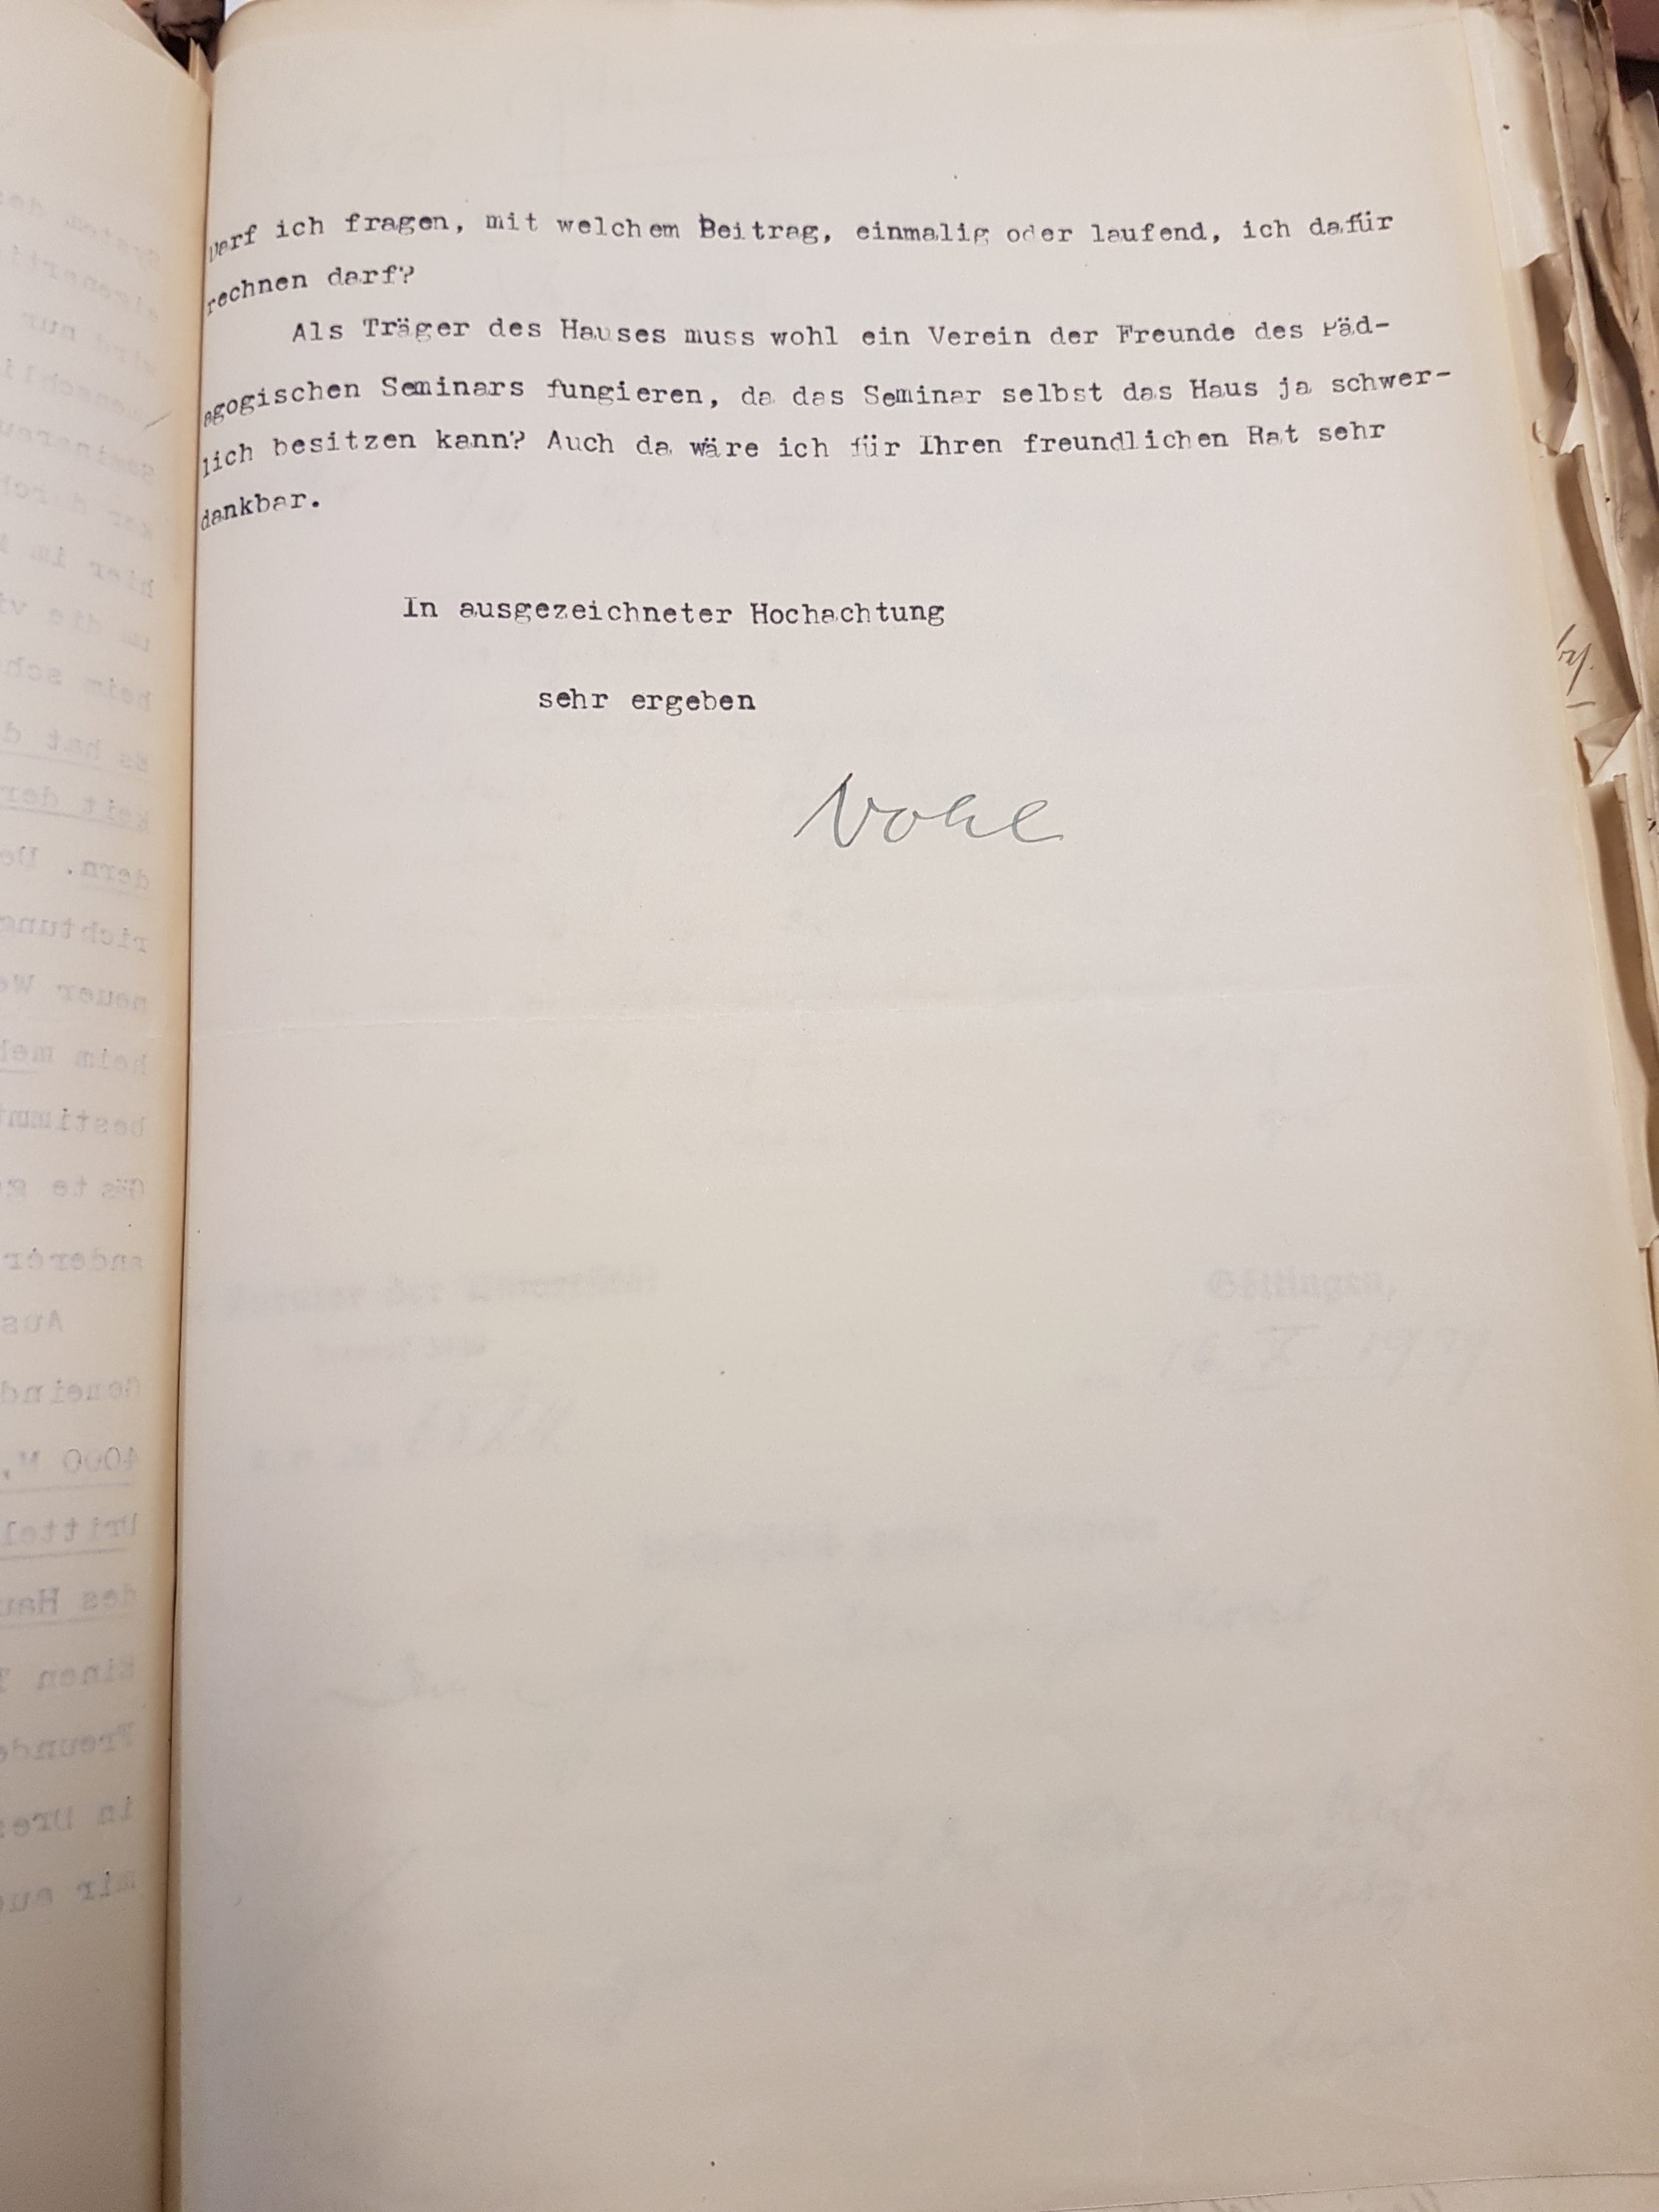 Brief Nohls vom 15.10.1929 an den Kurator der Universität betreffend die Ersteigerung eines Hauses als Landheim in Lippoldsberg, Seite 3. Quelle: Universitätsarchiv Göttingen: Kur. 1263; unpag.